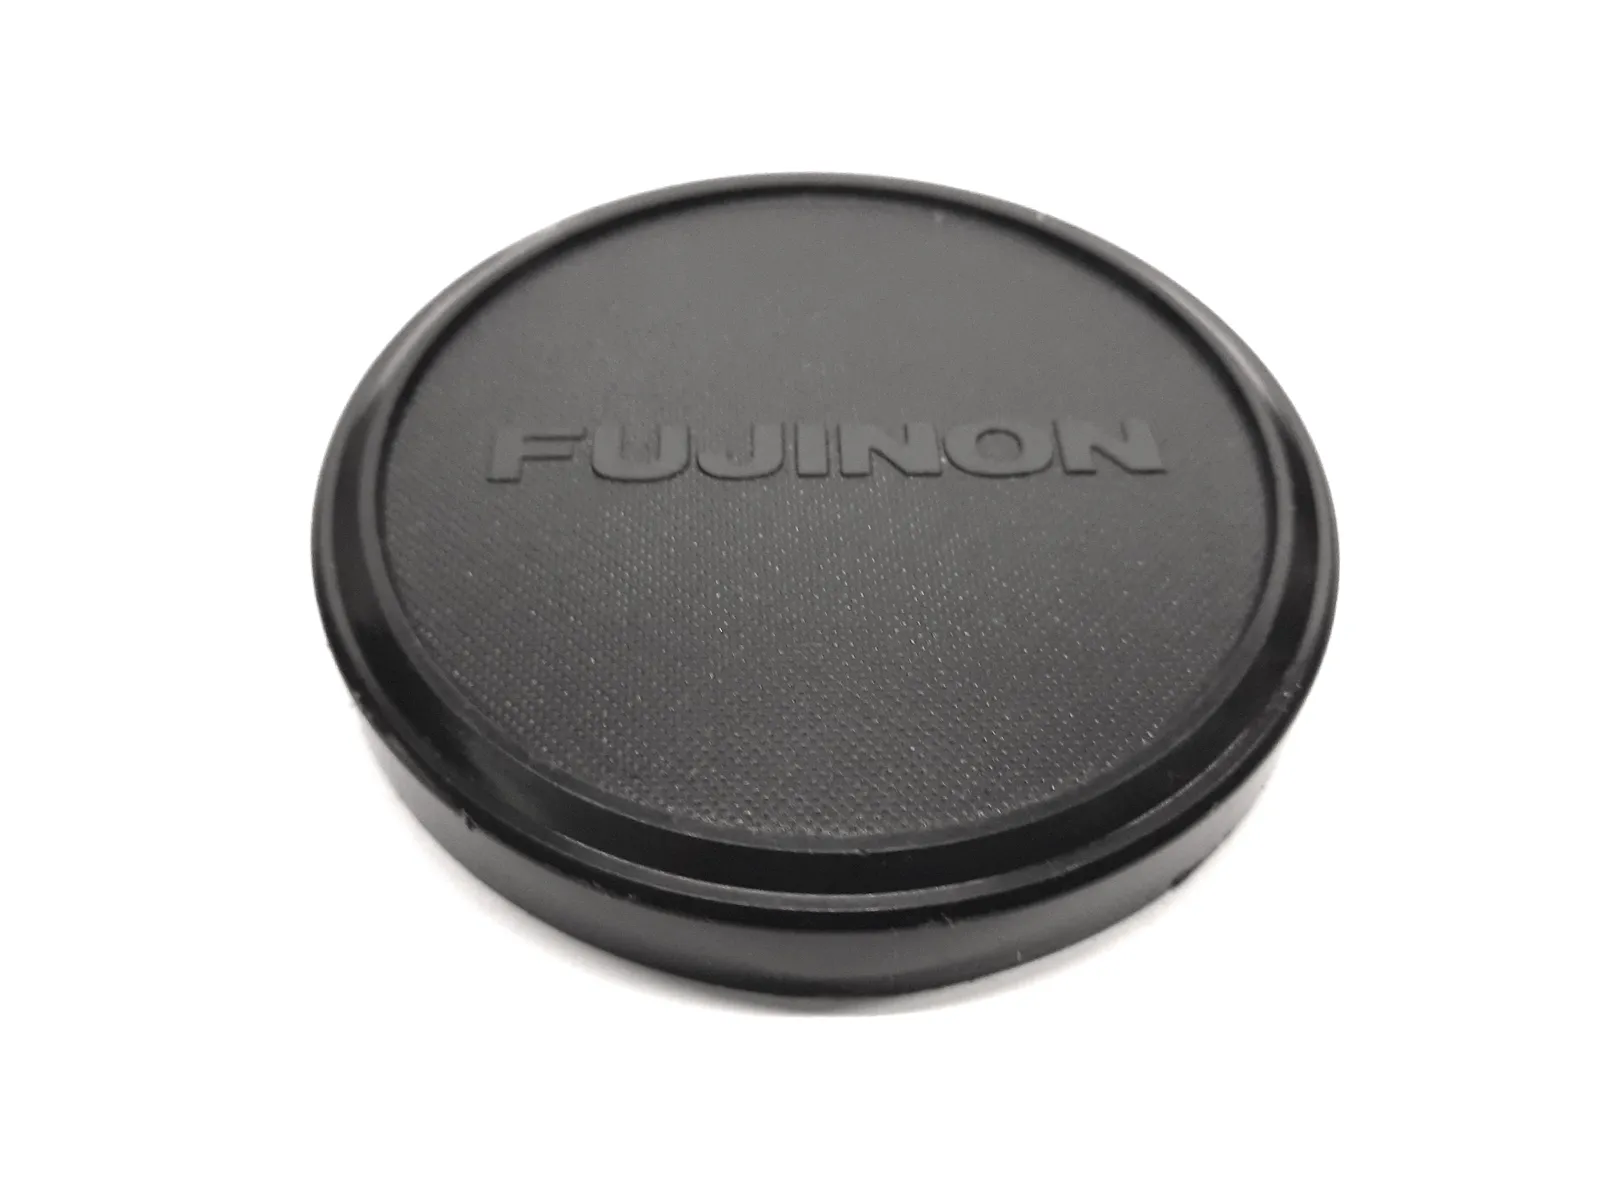 Vintage Fujinon 85mm - Black Plastic Front Lens Cap Cover - Clean